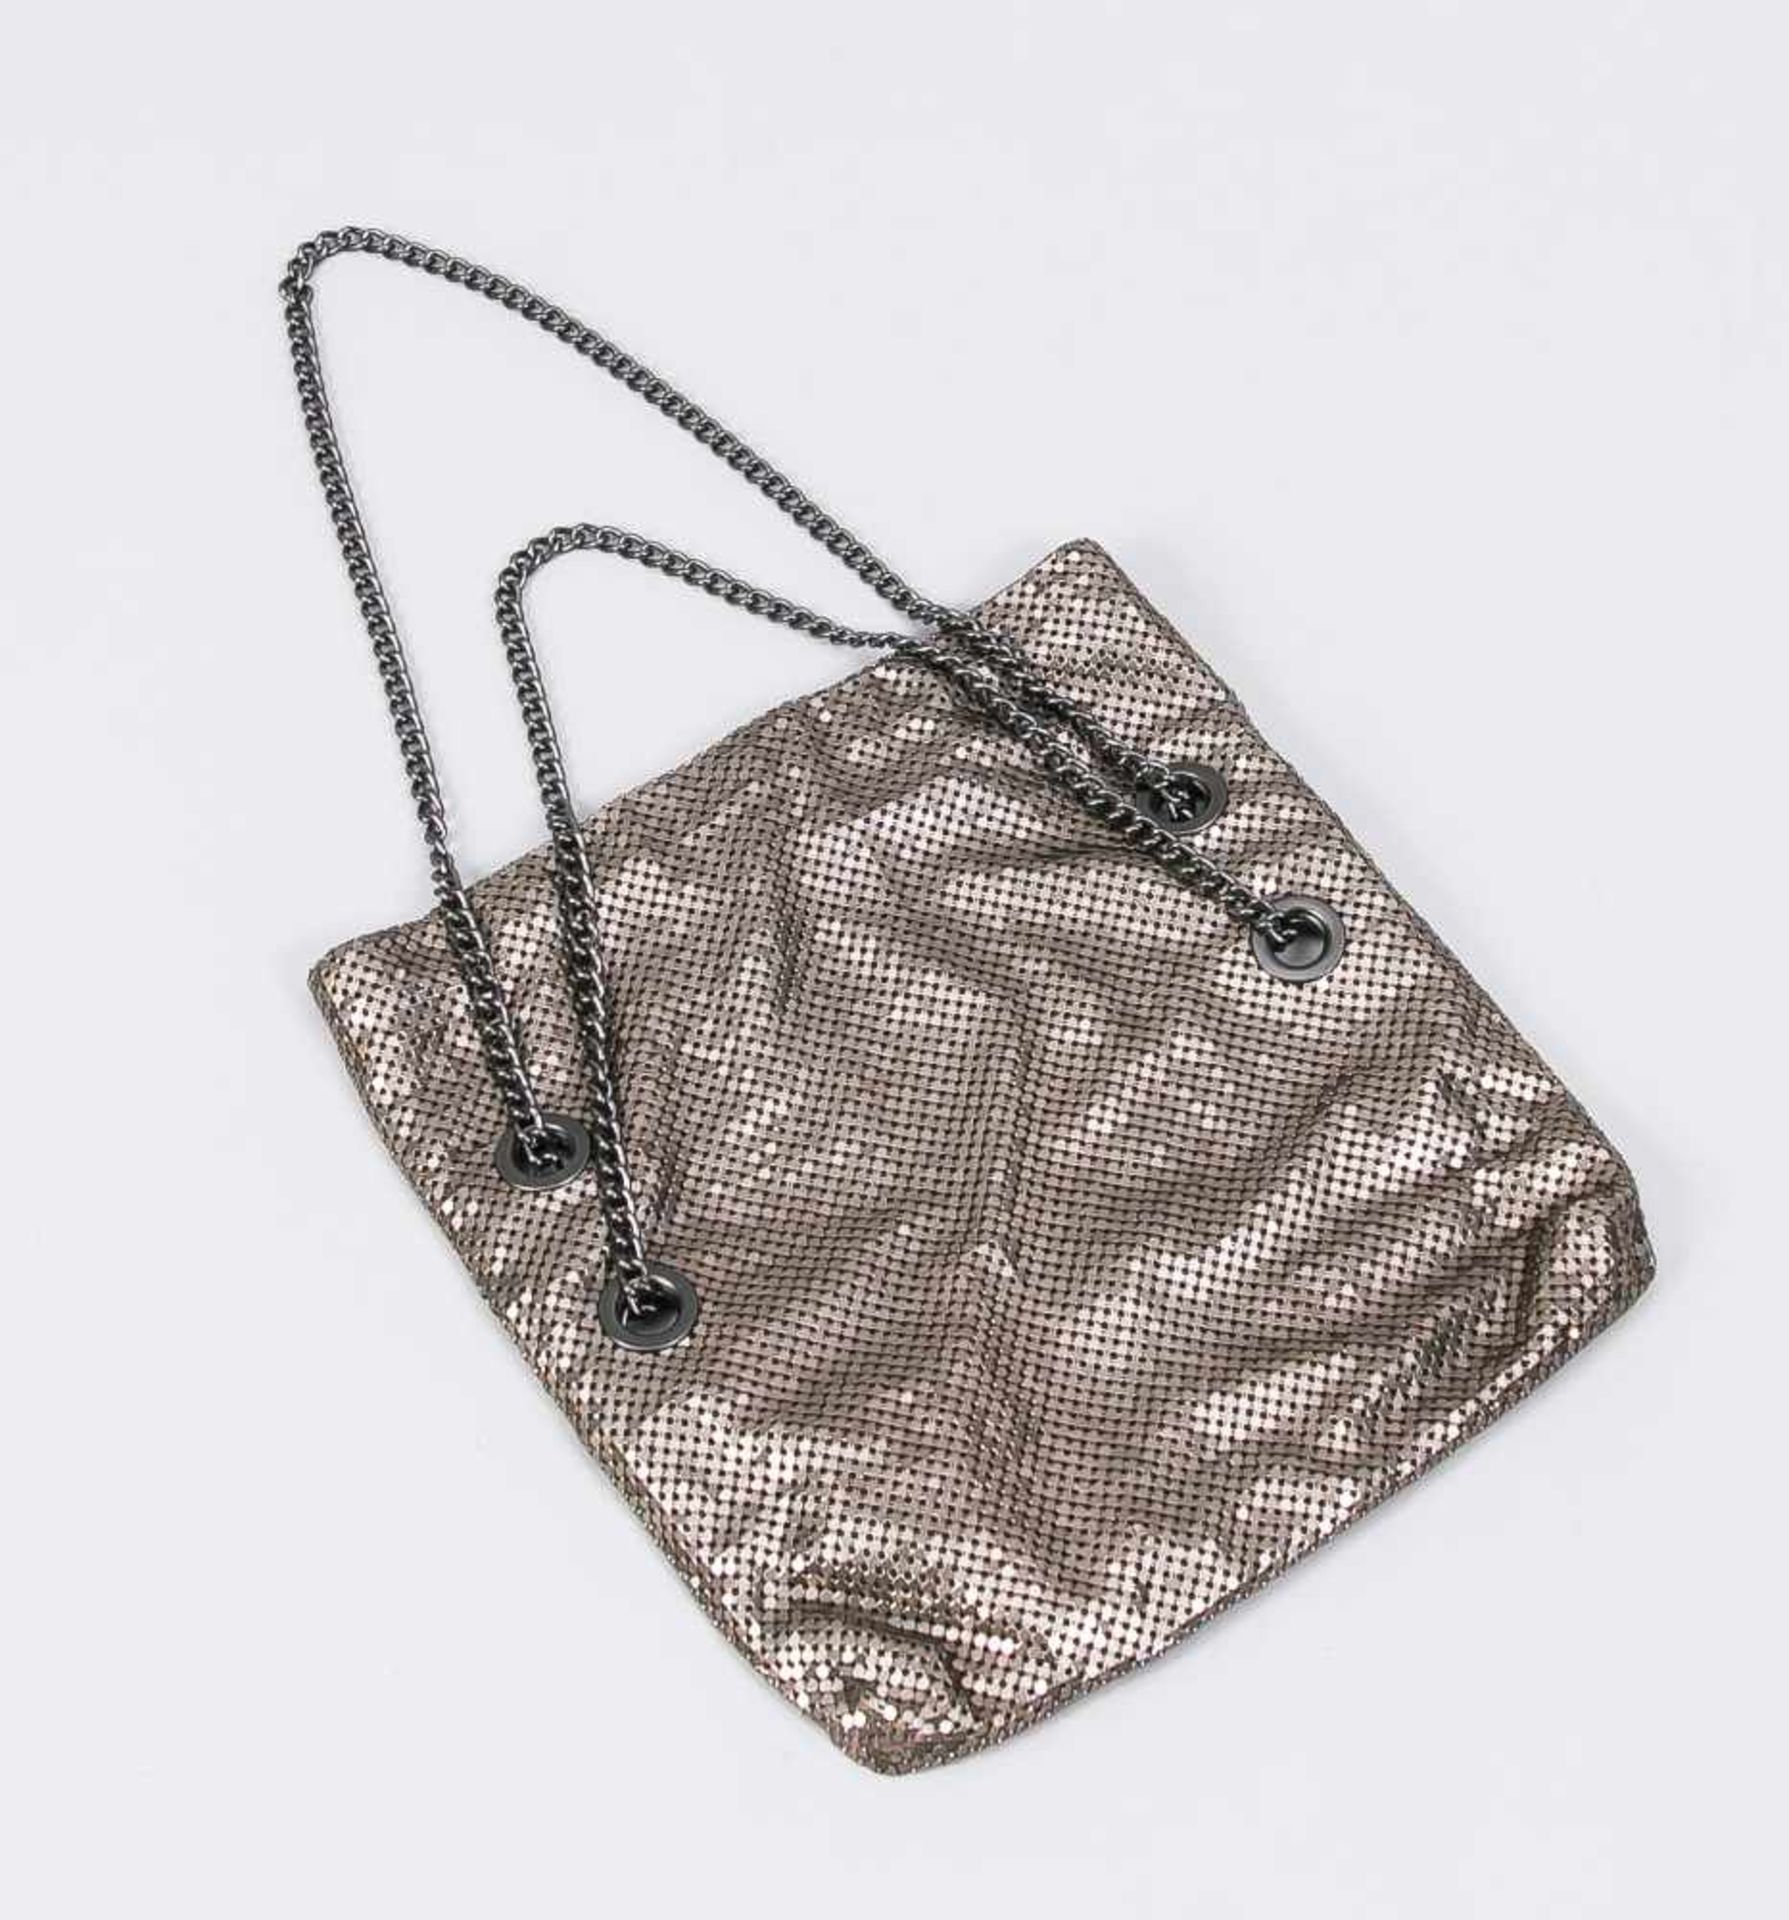 Kleine Handtasche aus Metall, 20./21. Jh., silbrig glänzende Oberfläche aus vielen